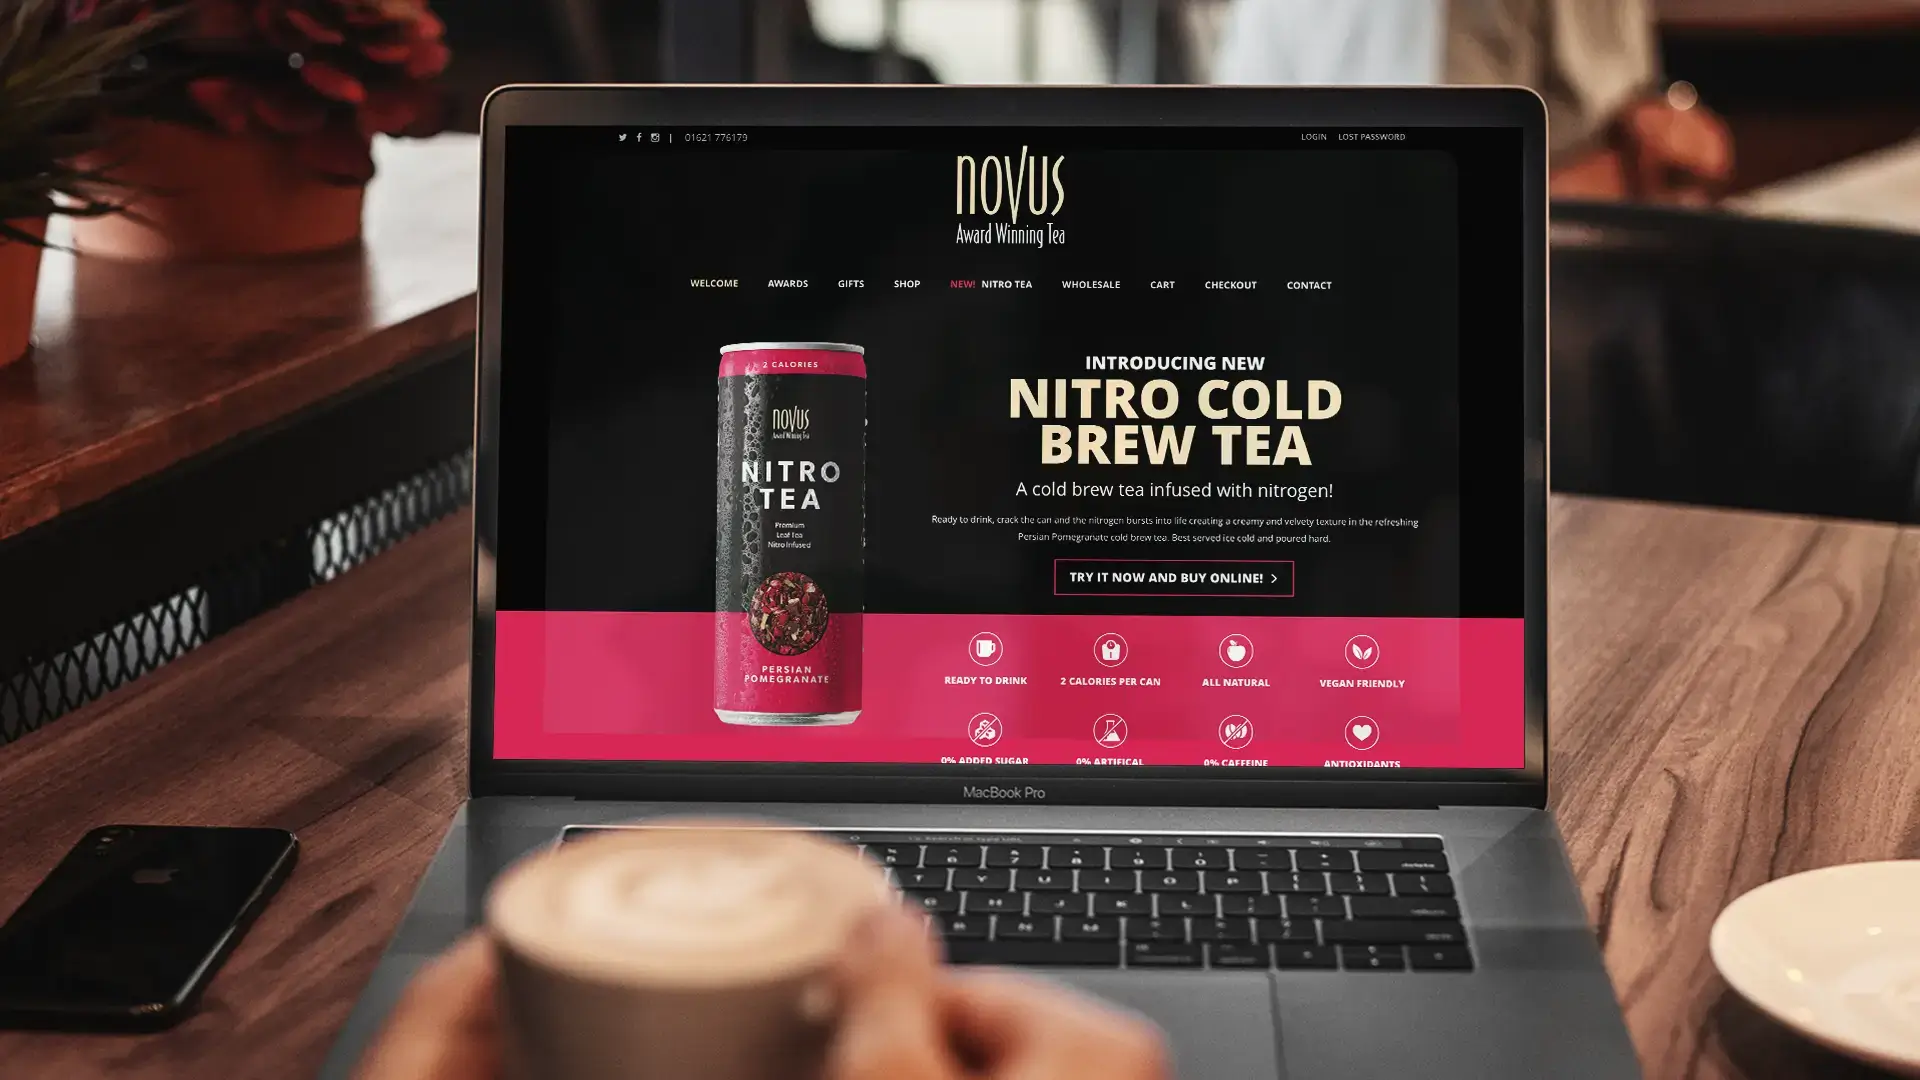 Novus tea website design